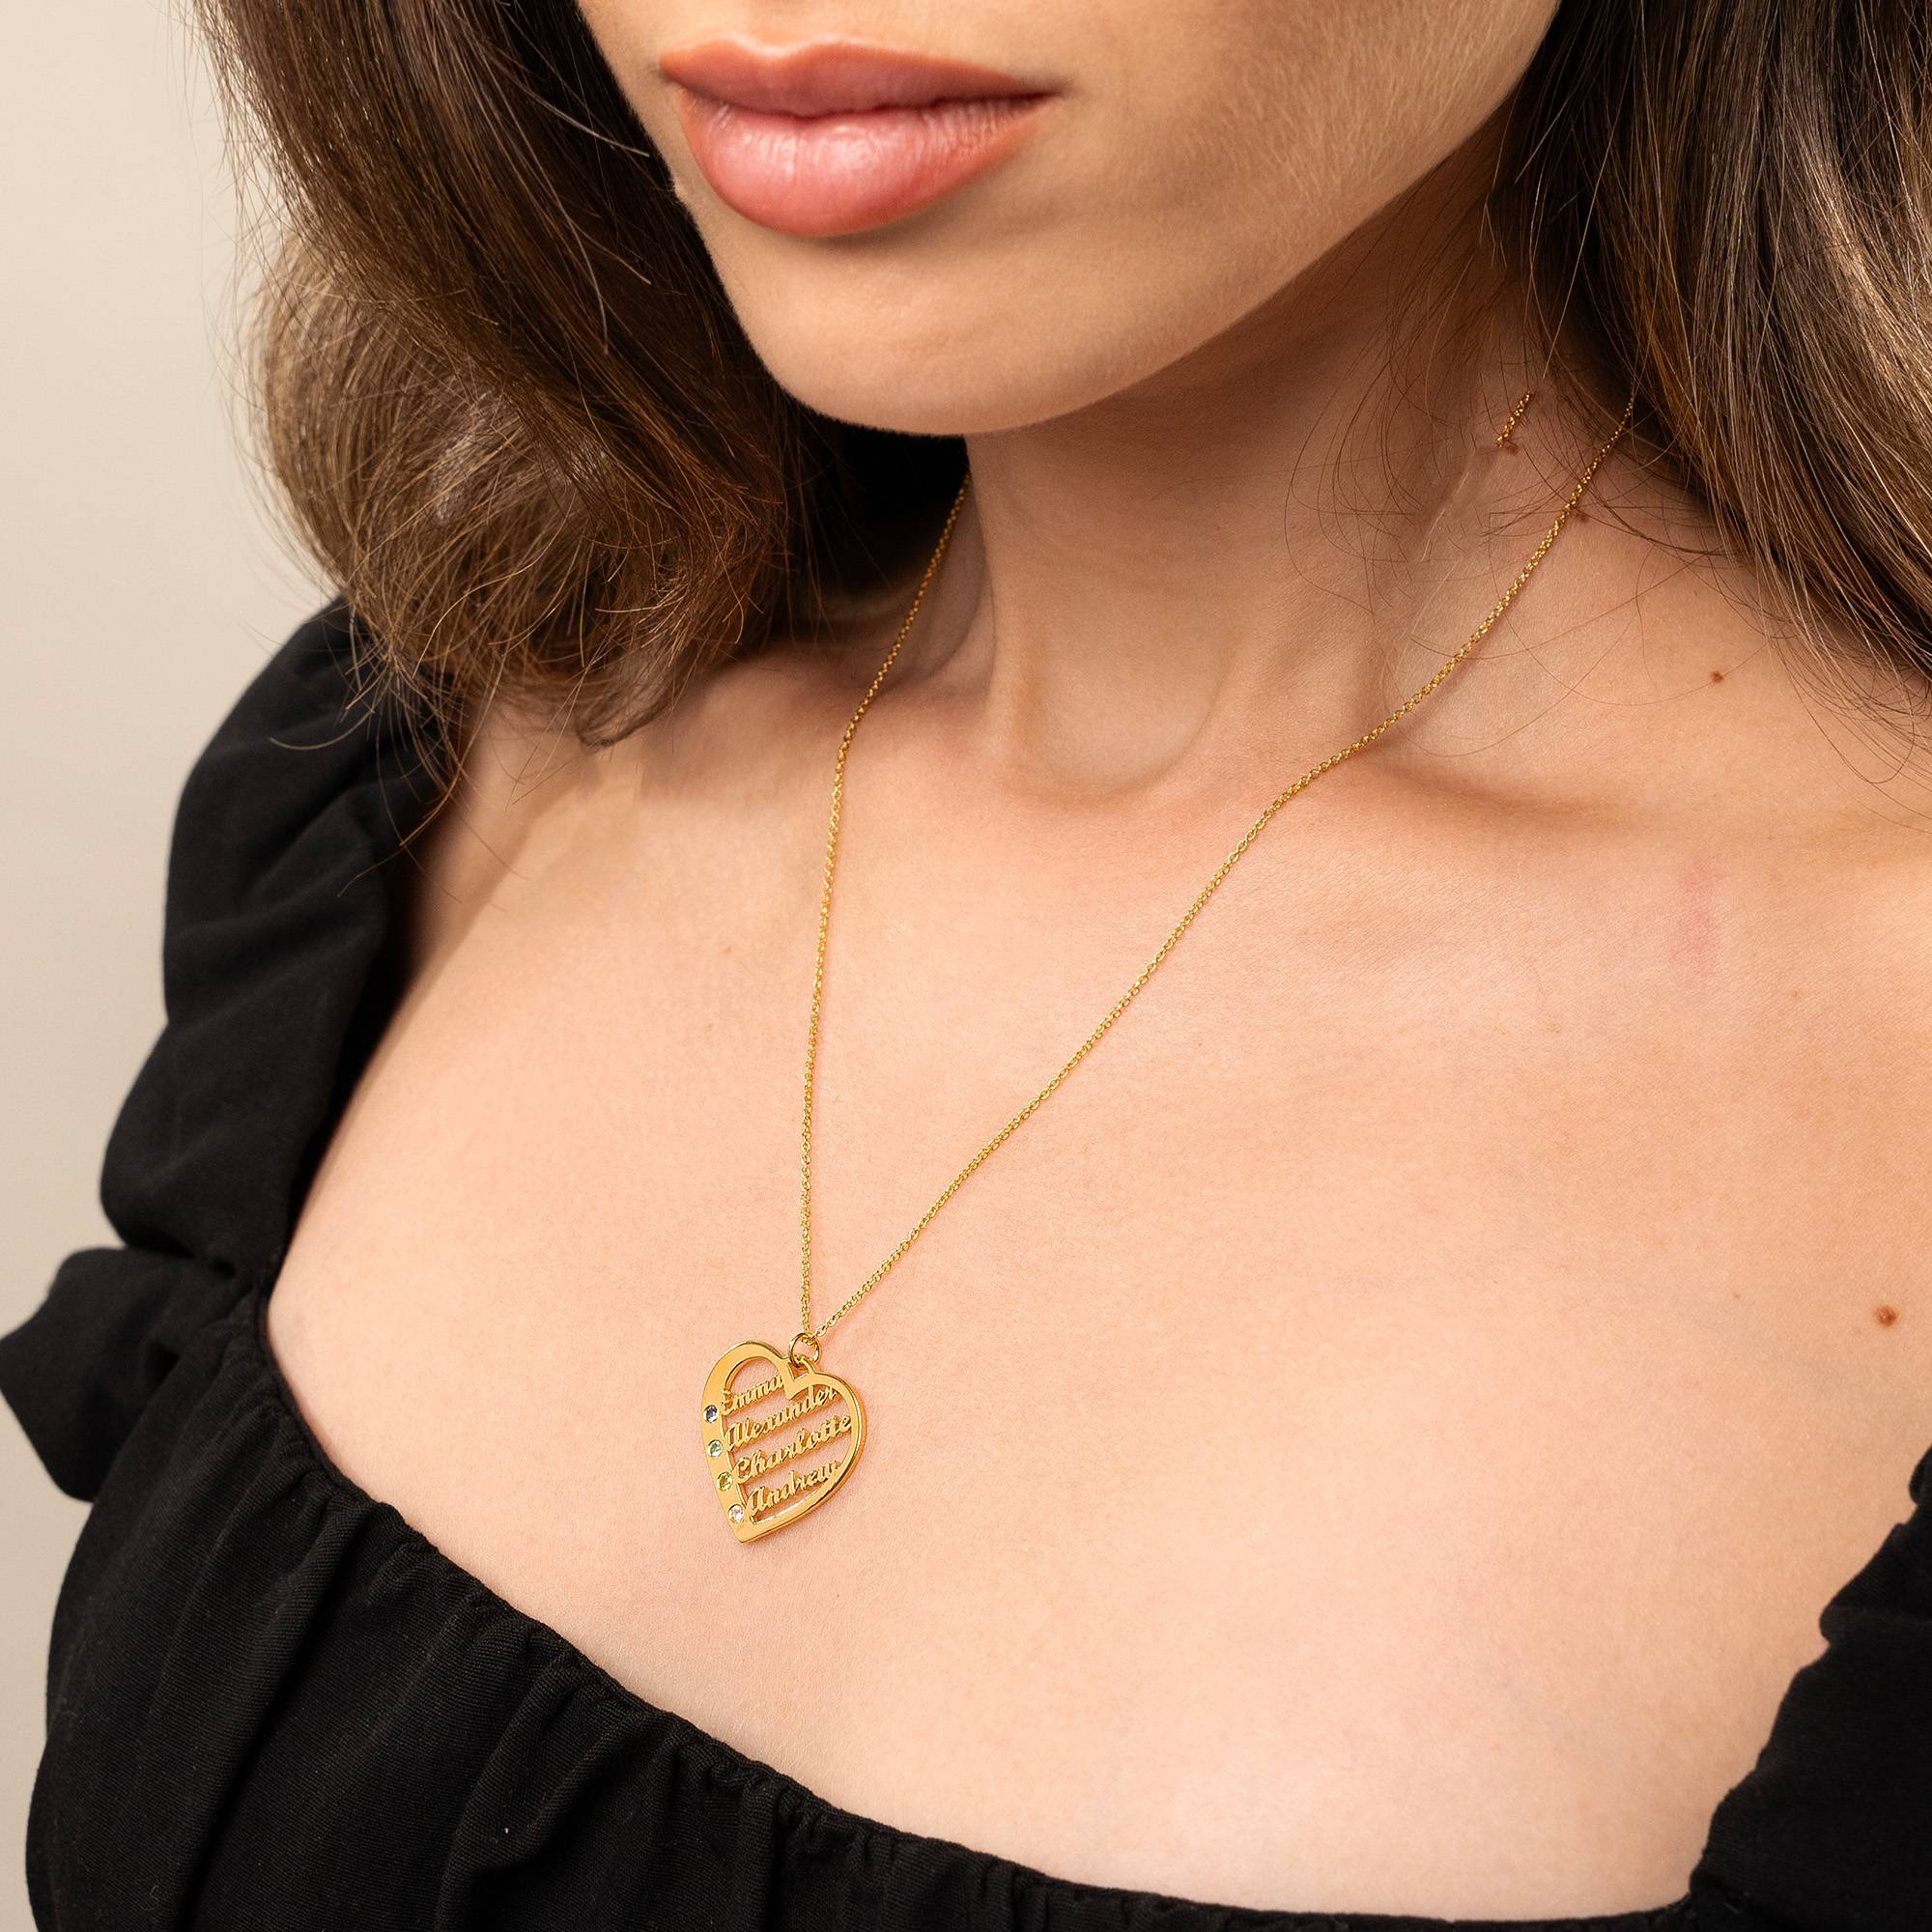 Ella Geburtsstein Herz Halskette mit Namen - 585er Gelbgold-2 Produktfoto